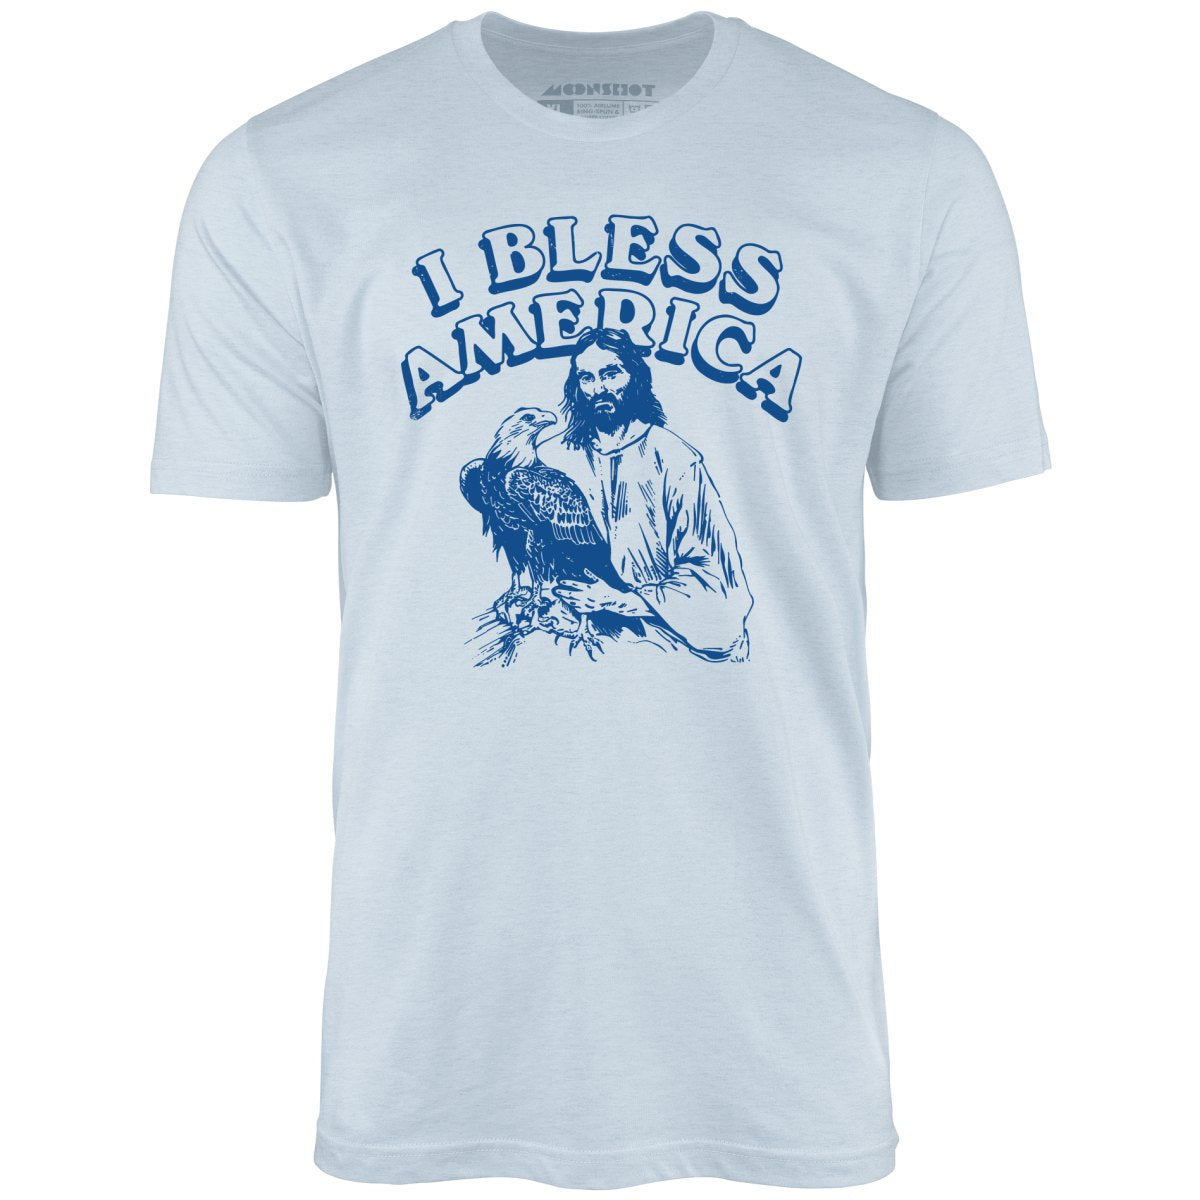 I Bless America - Unisex T-Shirt